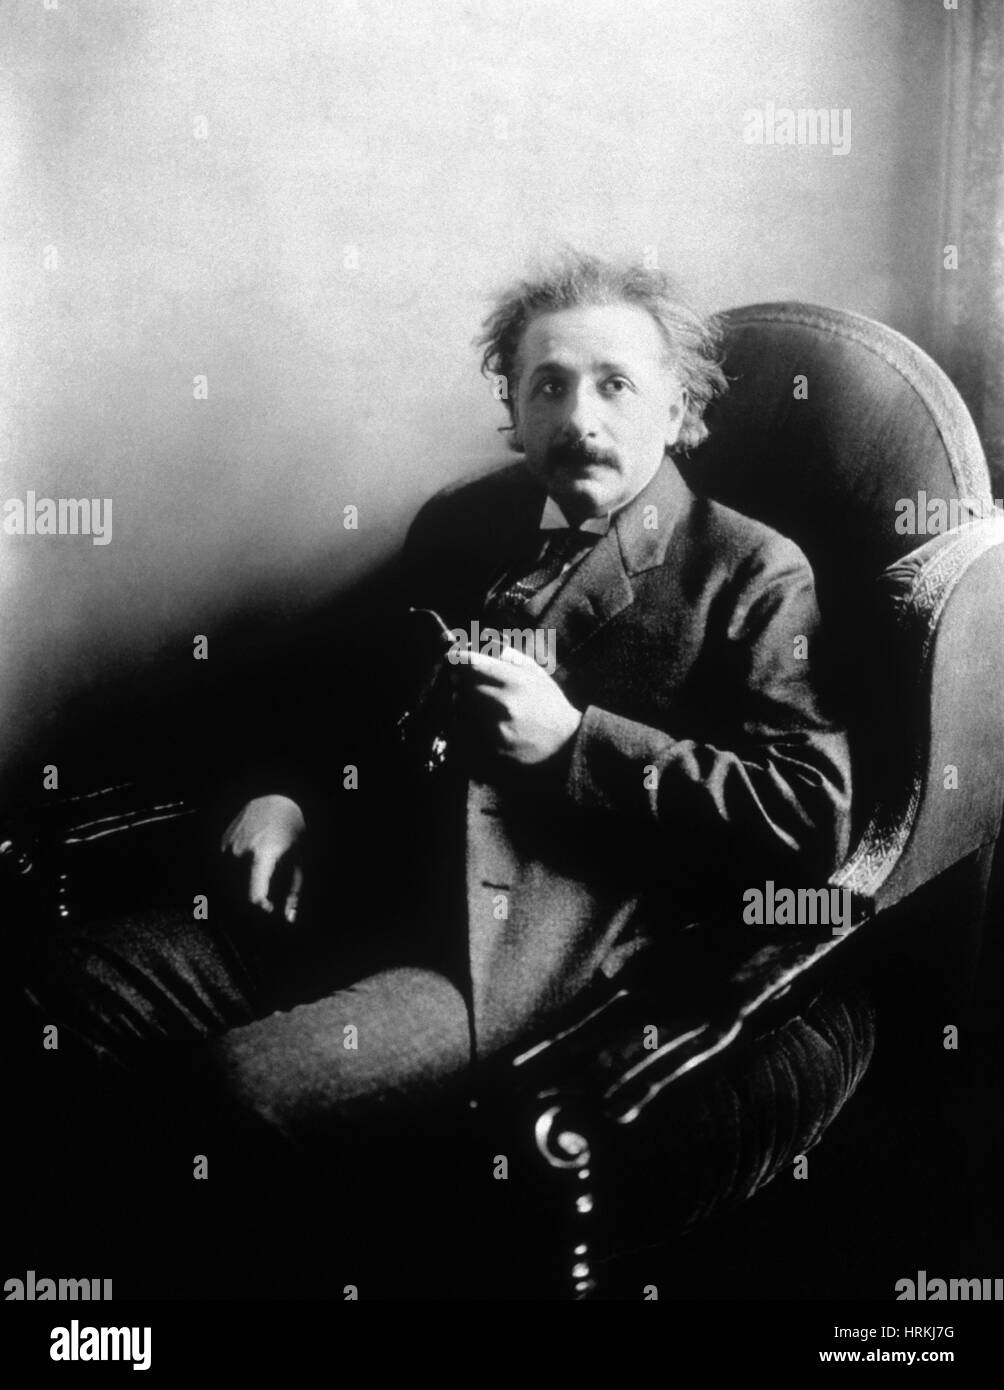 Albert Einstein fisico tedesco-americana Foto Stock